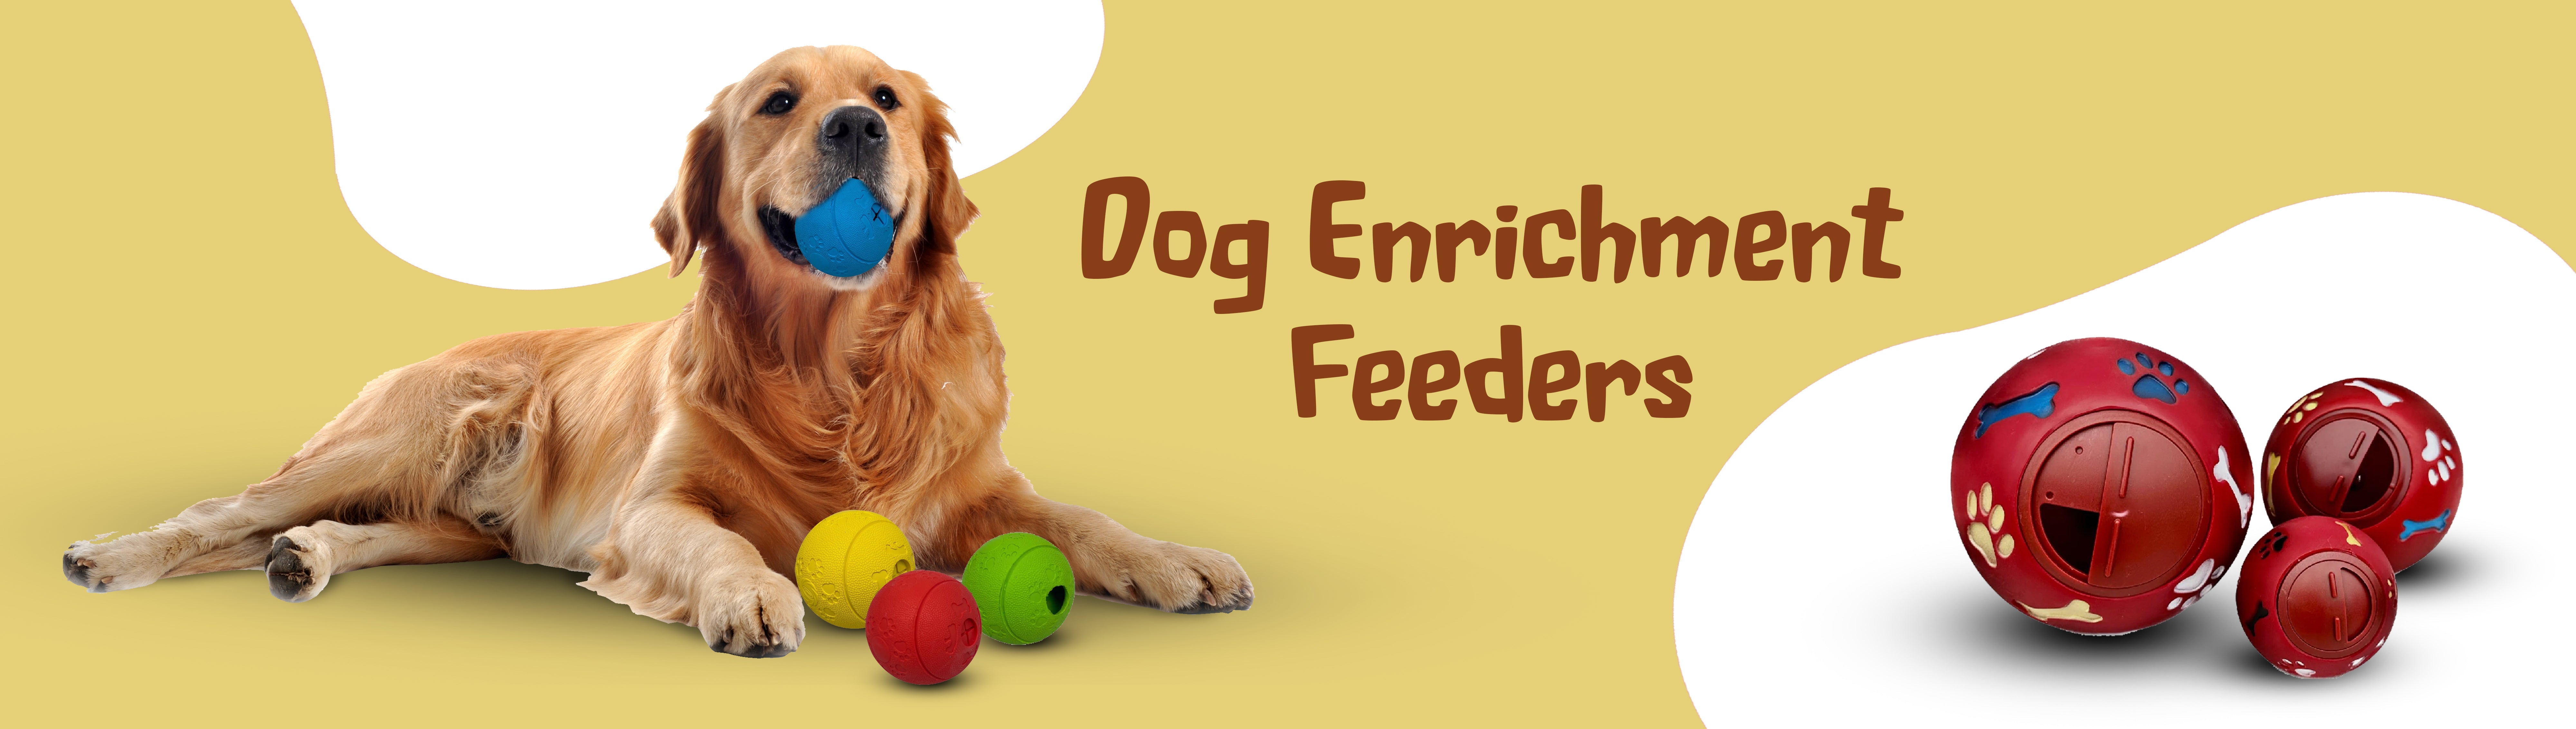 Dog Enrichment Feeders